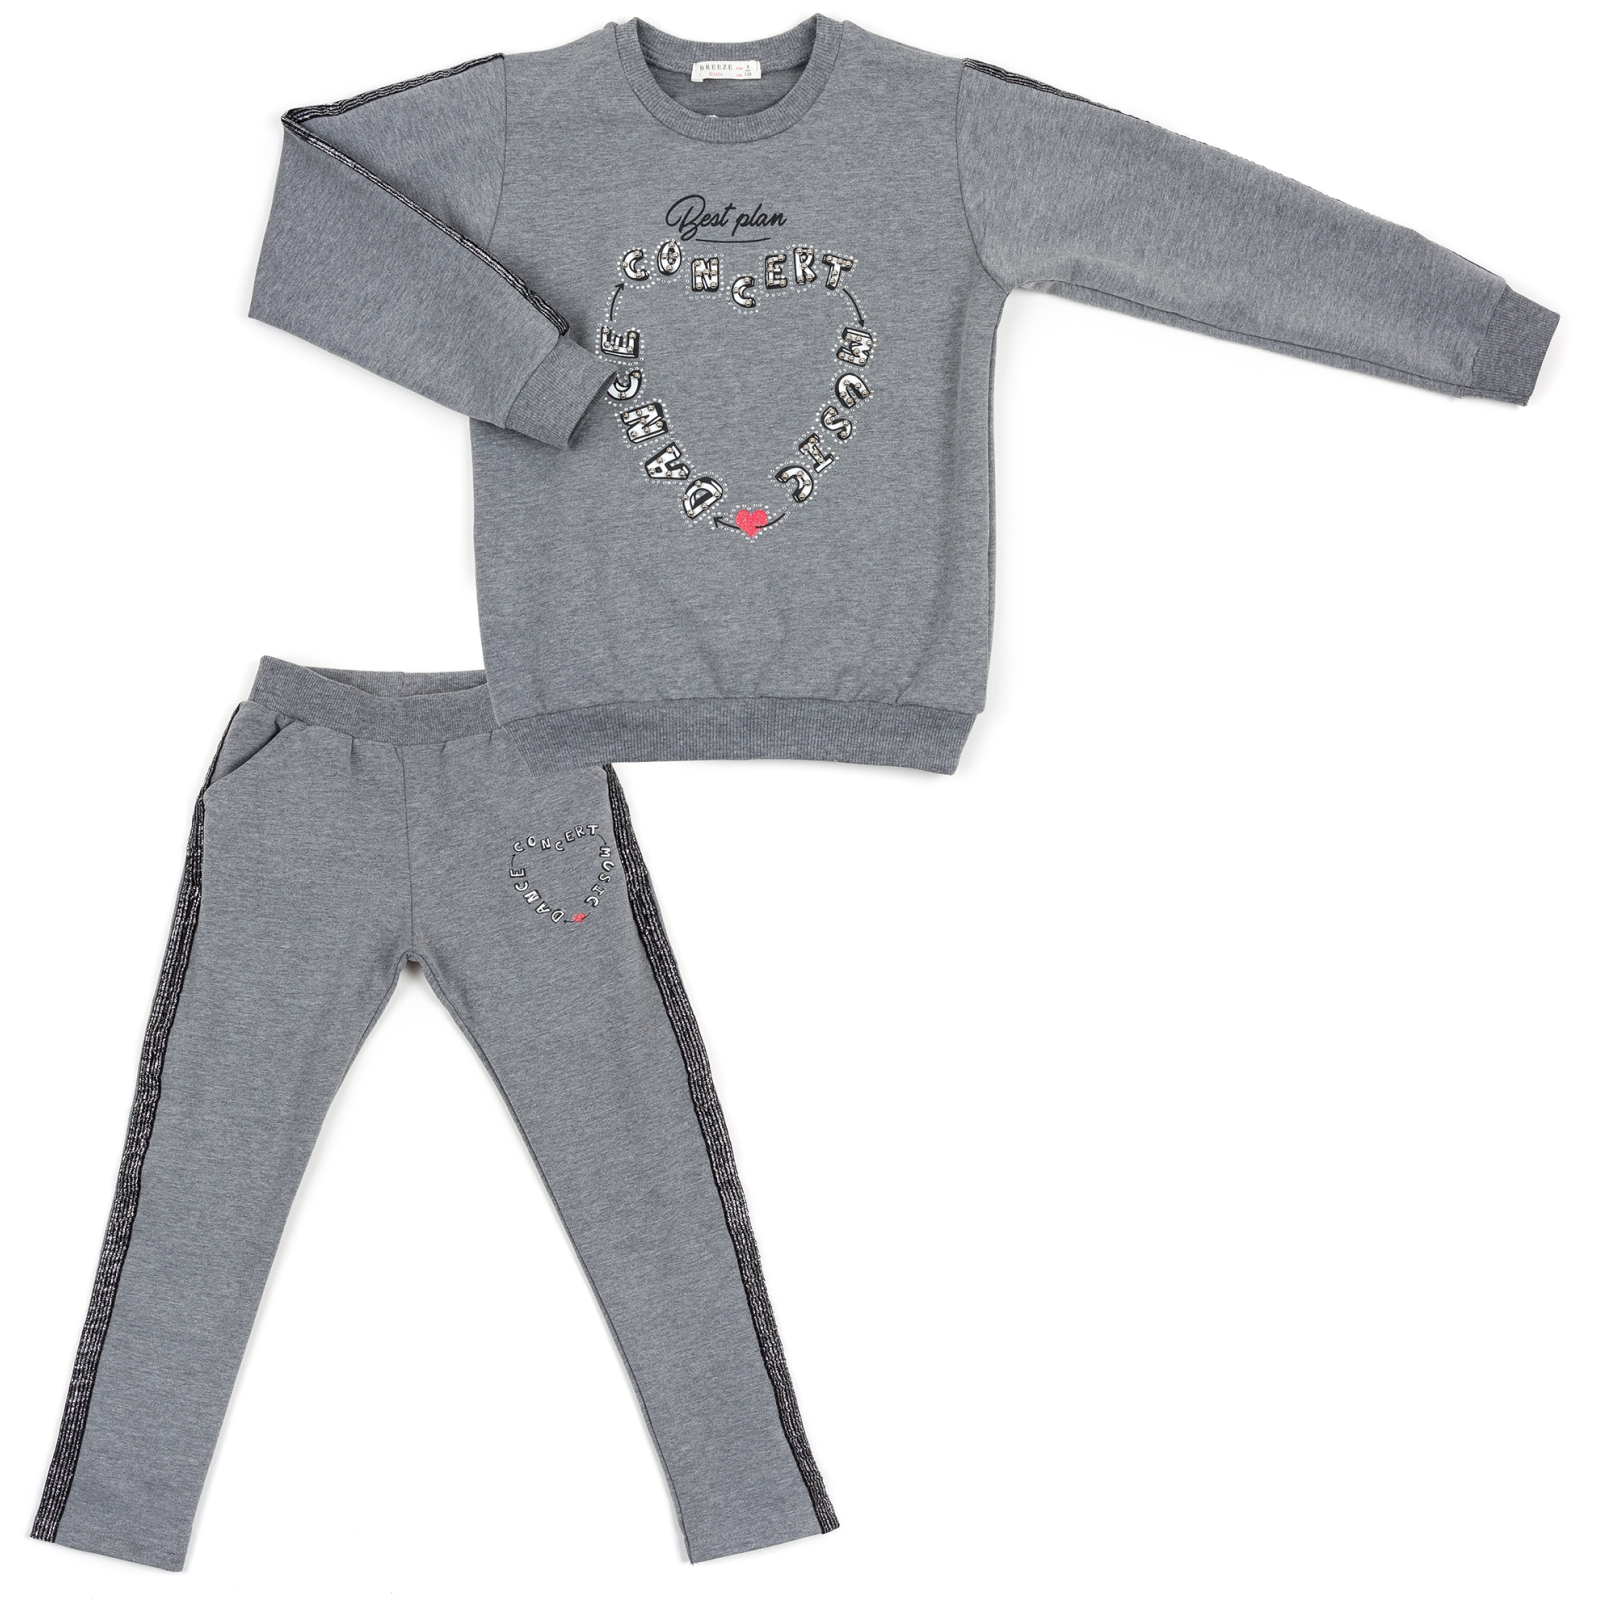 Набір дитячого одягу Breeze з срібними лампасами (12973-152G-black)